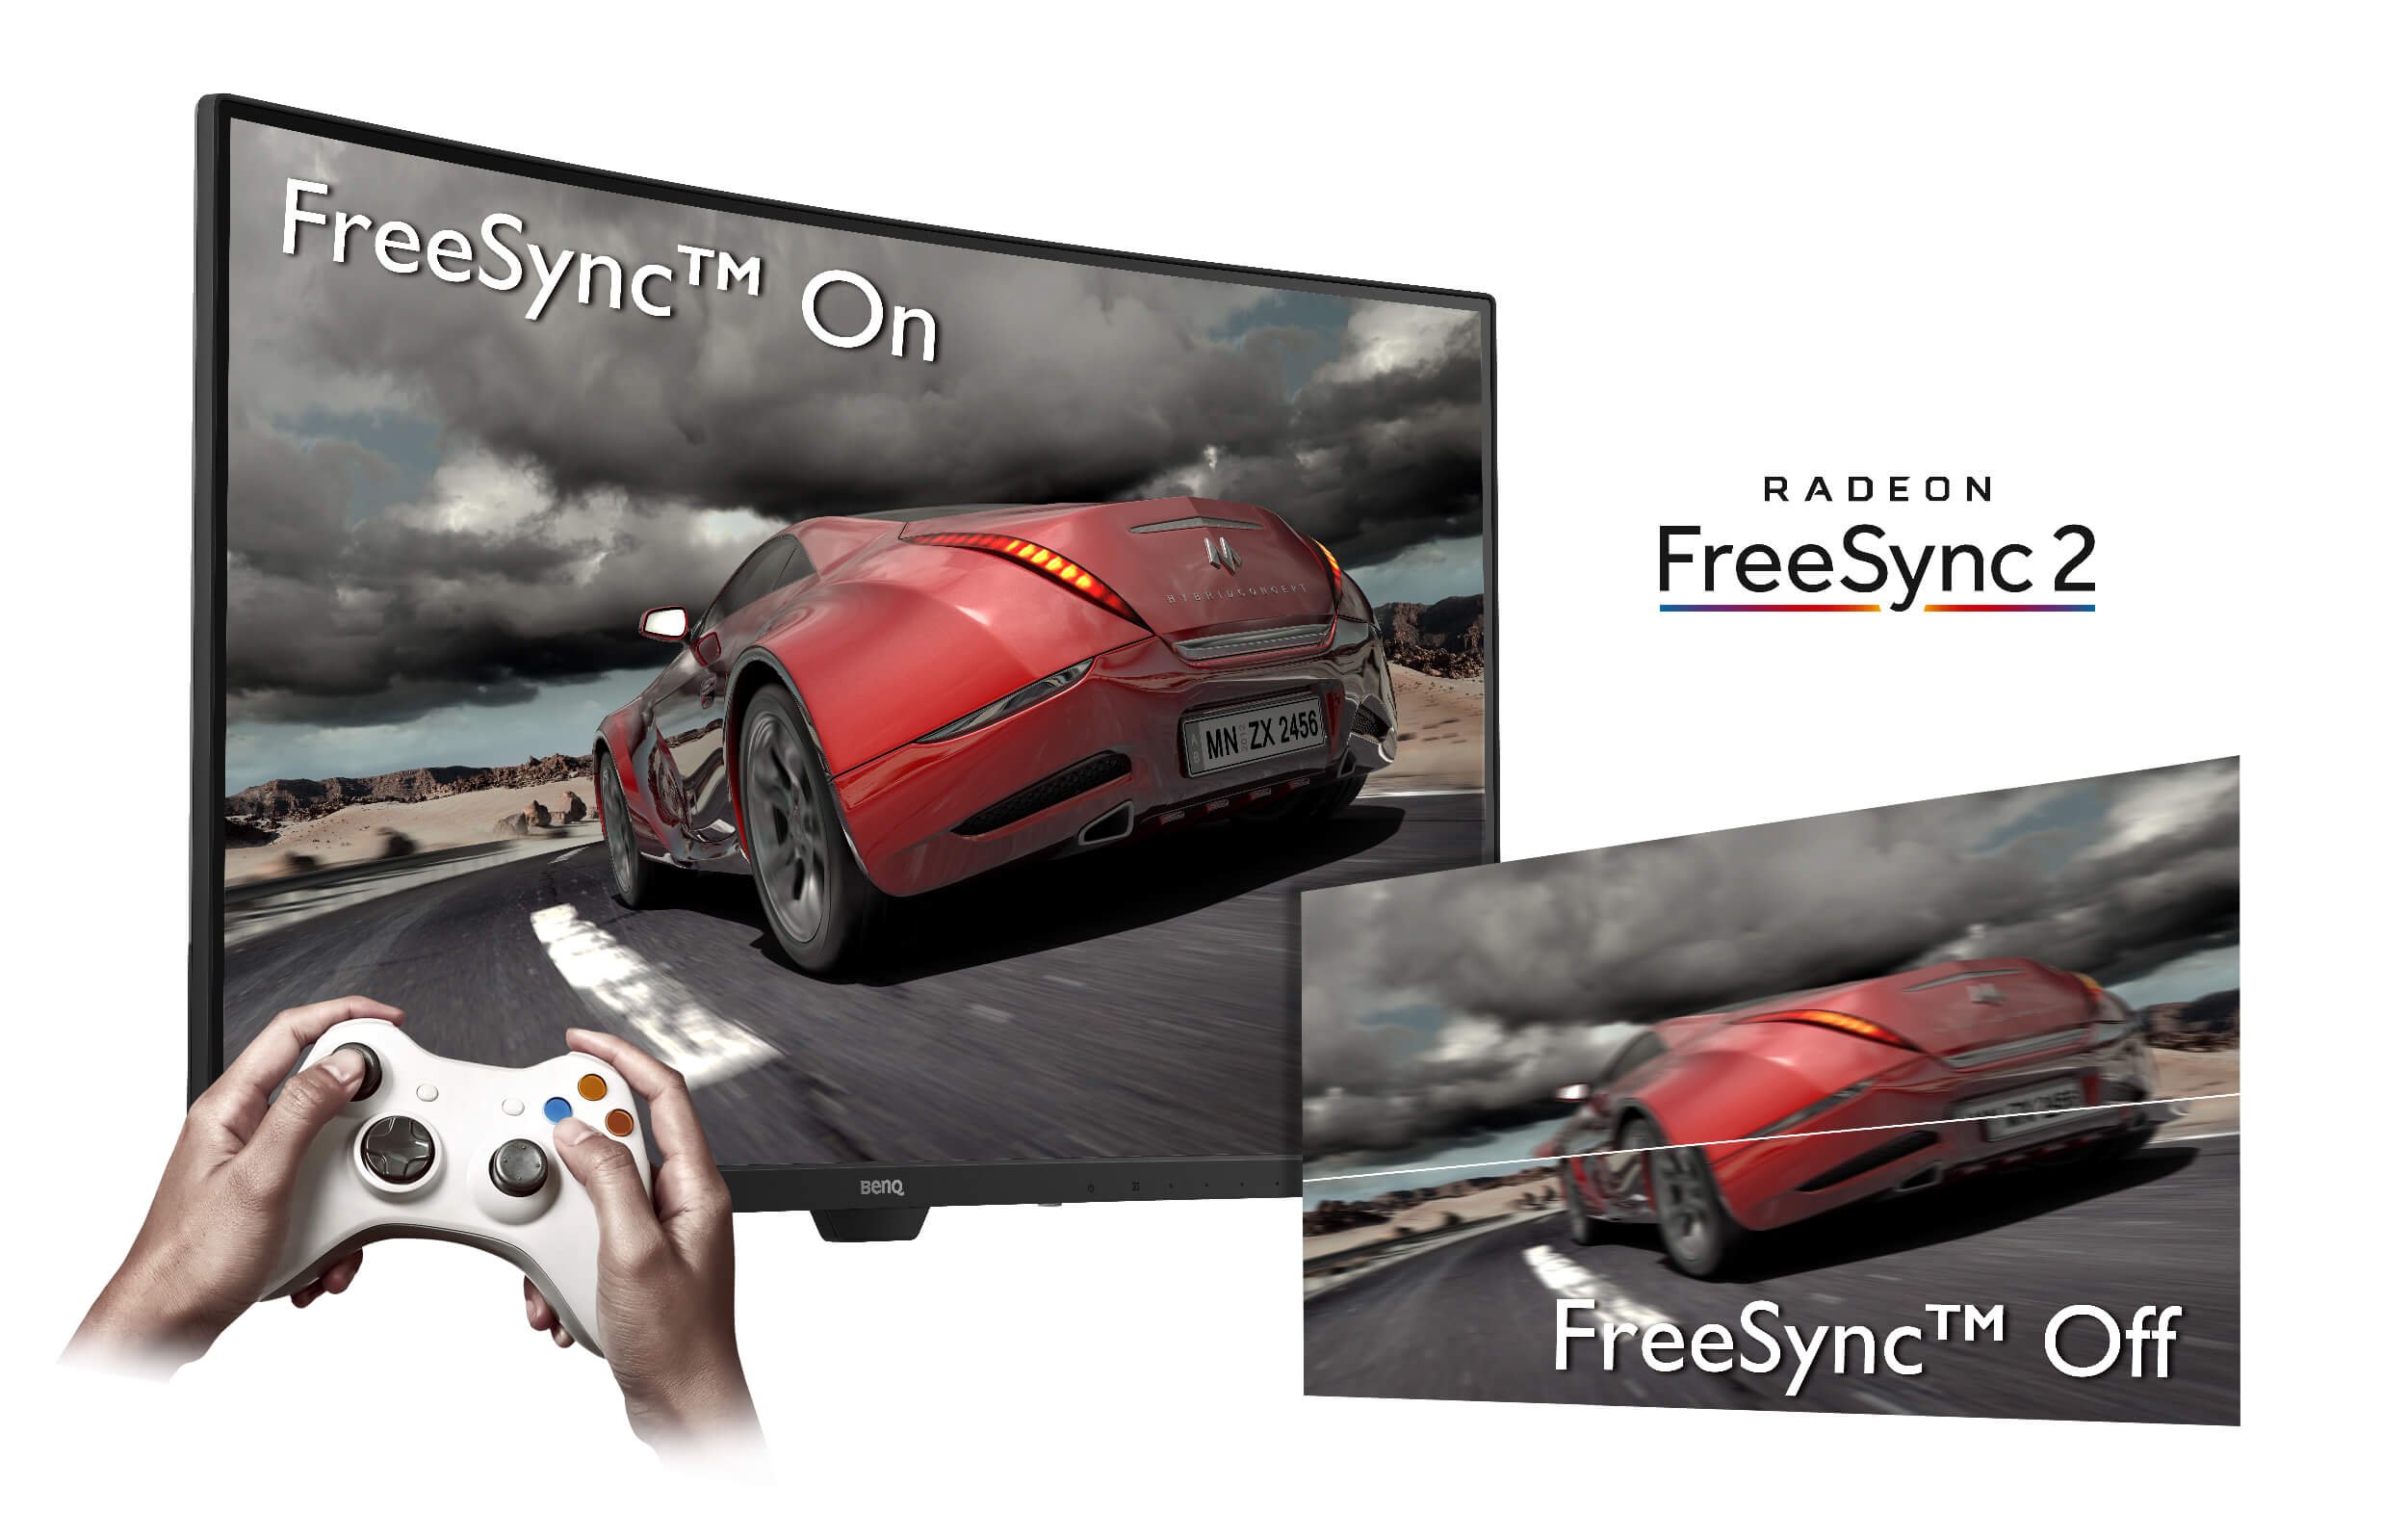 FreeSync-kompatibla bildskärmar förhindrar revor i bilden.